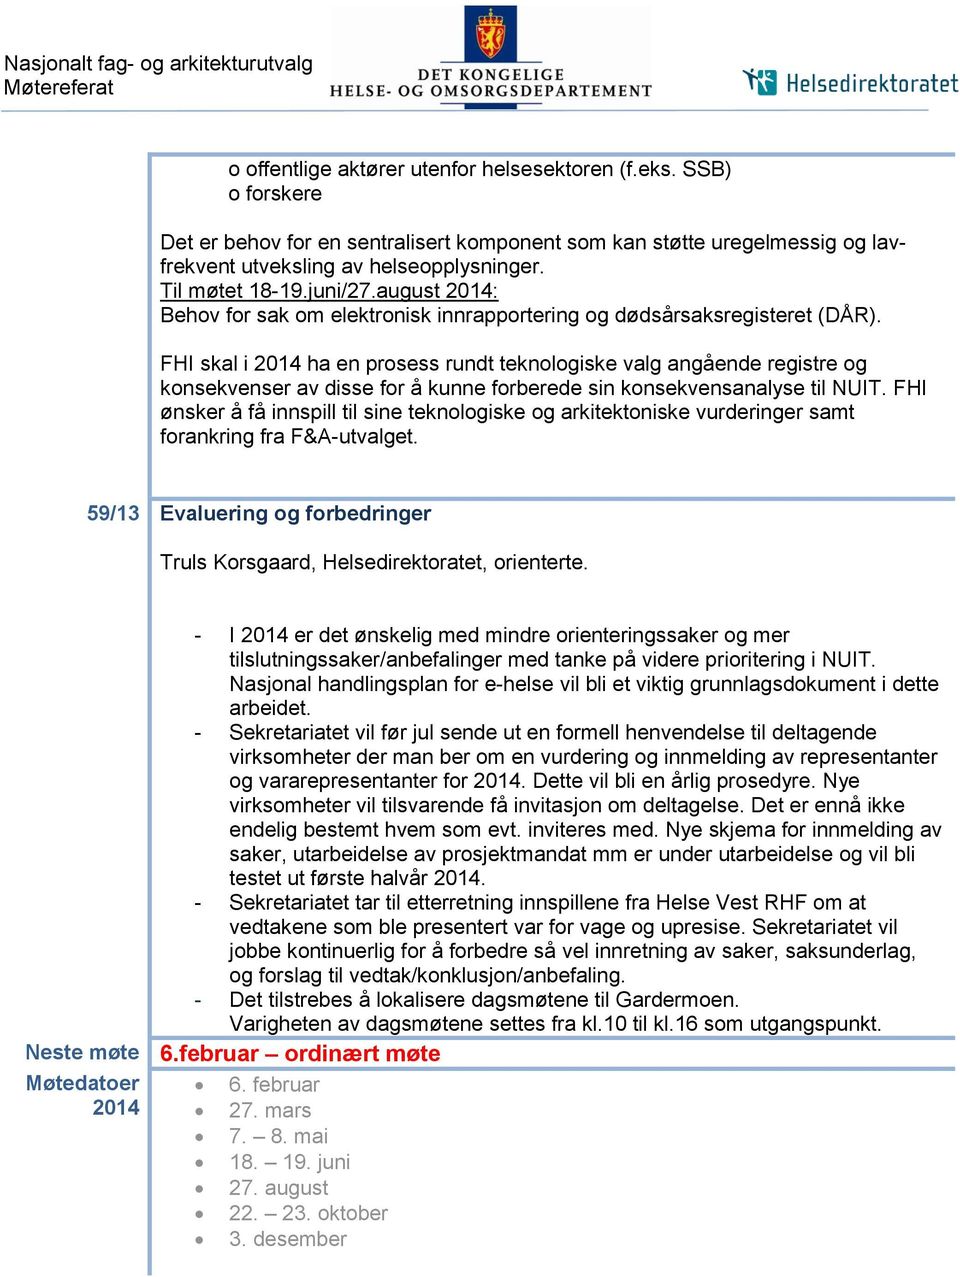 august 2014: Behov for sak om elektronisk innrapportering og dødsårsaksregisteret (DÅR).